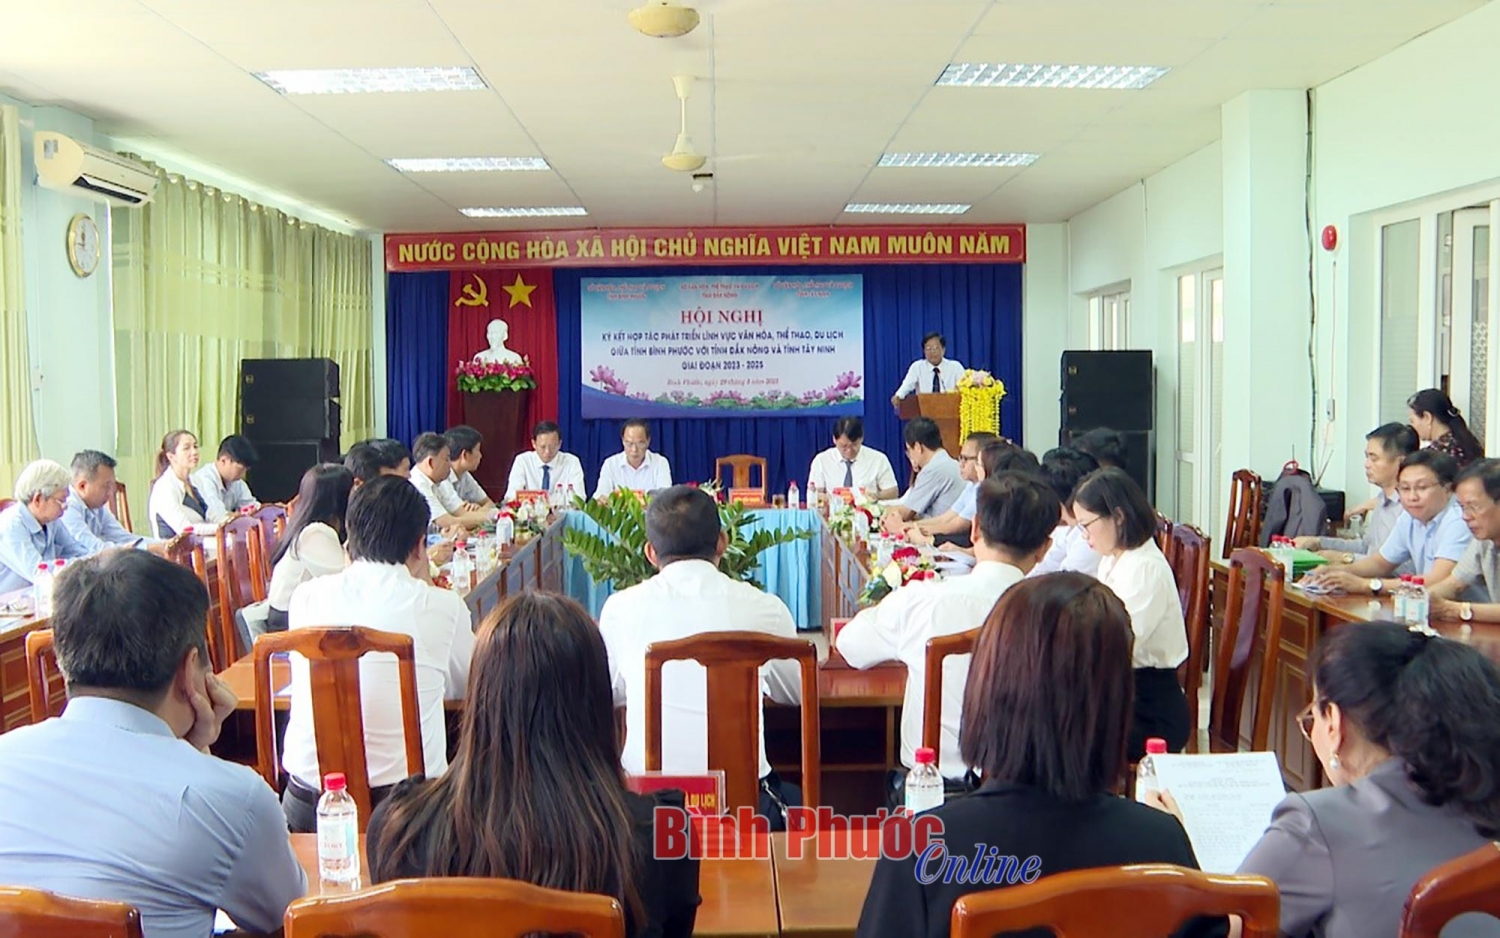 Bình Phước - Đắk Nông - Tây Ninh hợp tác phát triển Văn hóa, Thể thao và Du lịch